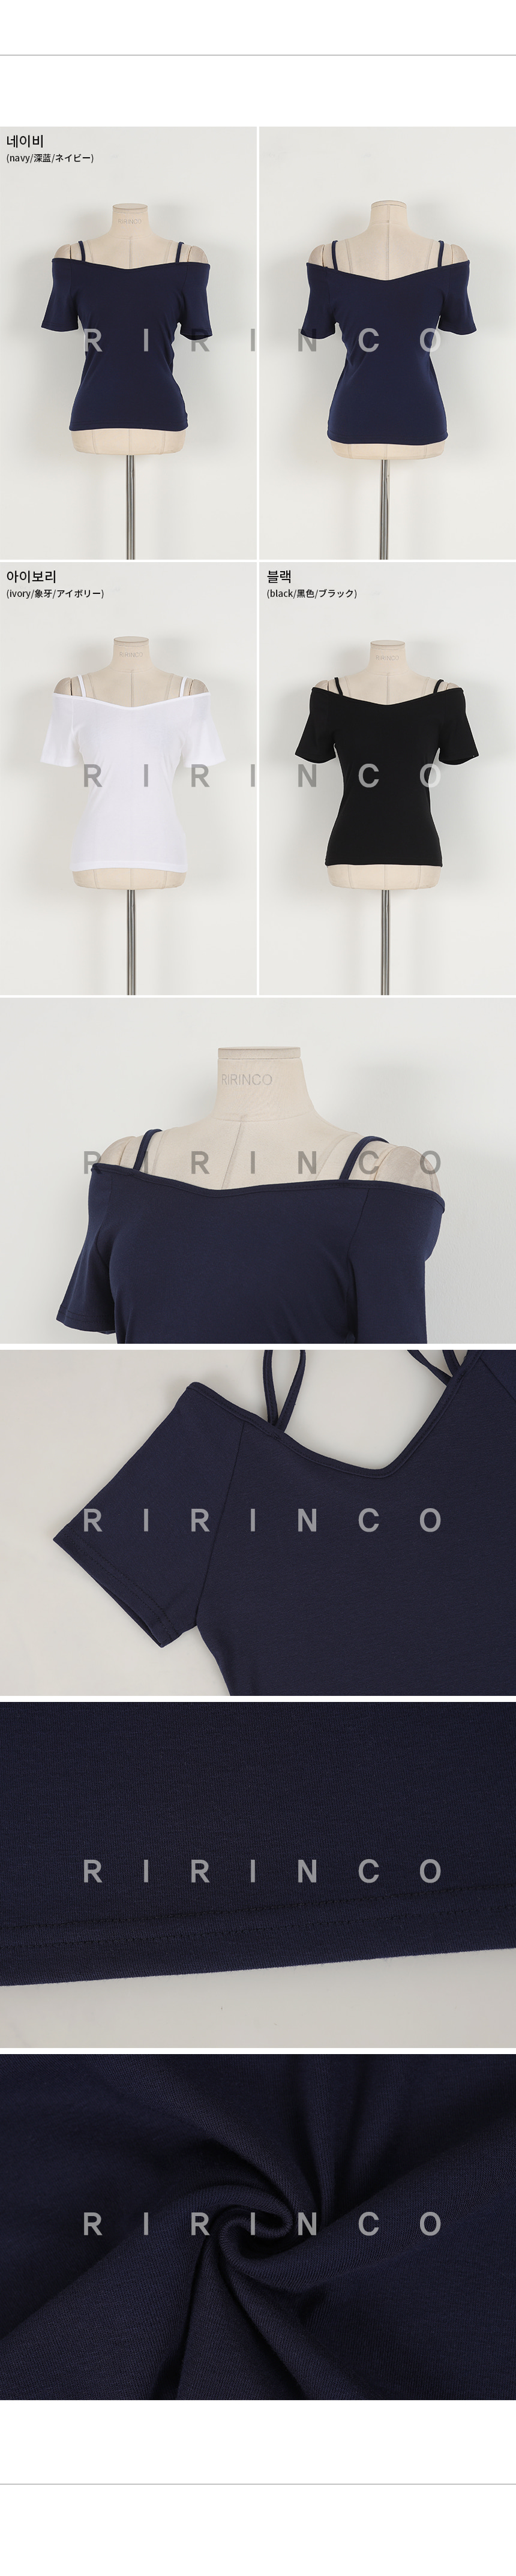 RIRINCO スパンデックスオープンショルダーTシャツ